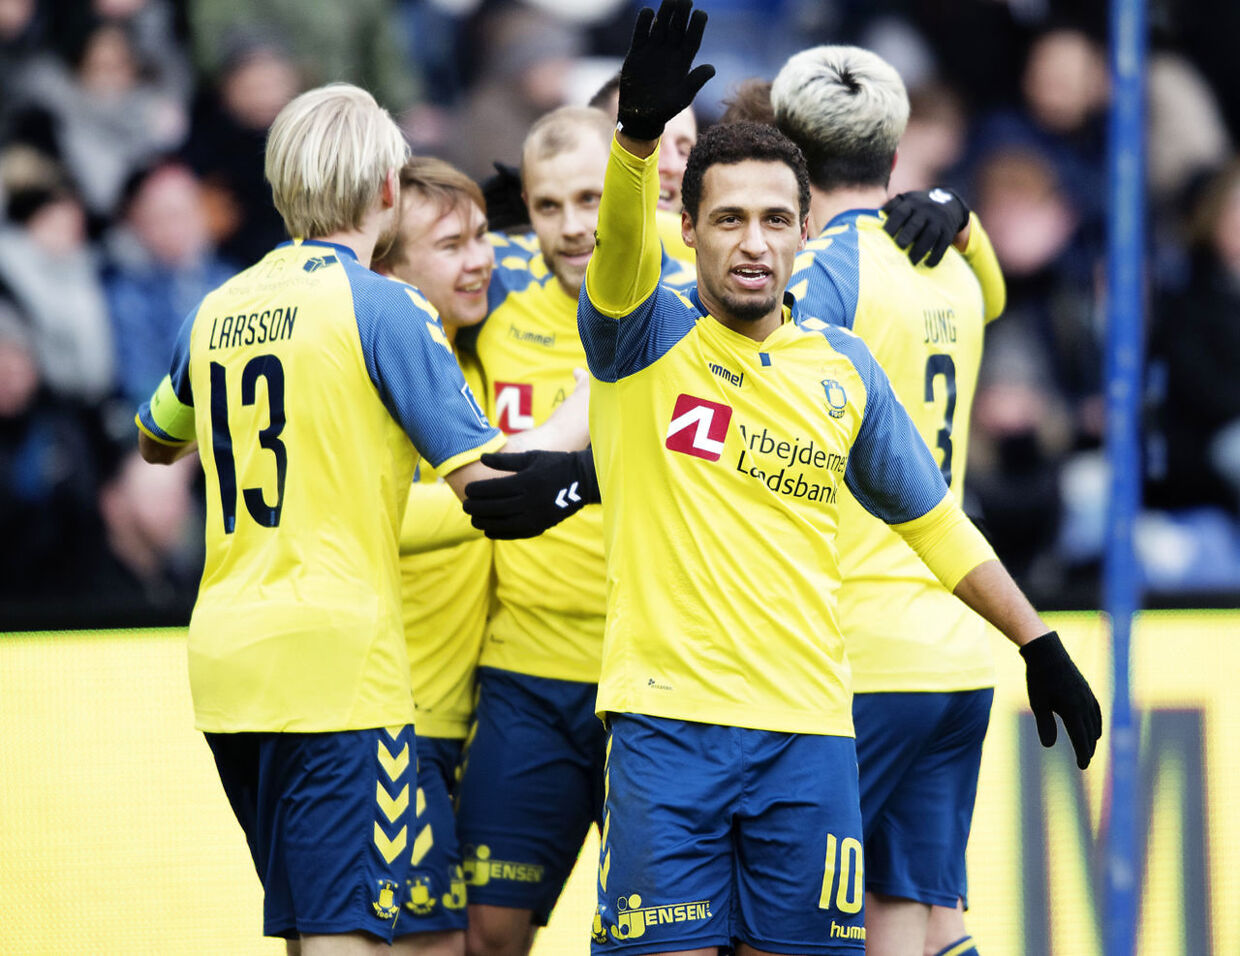 Hany Mukhtar jubler efter sin scoring til 2-0 under Superligakampen på Brøndby Stadion mellem Brøndby IF og FC Helsingør, søndag den 25. februar 2018. (Foto: Claus Bech/Scanpix 2018)